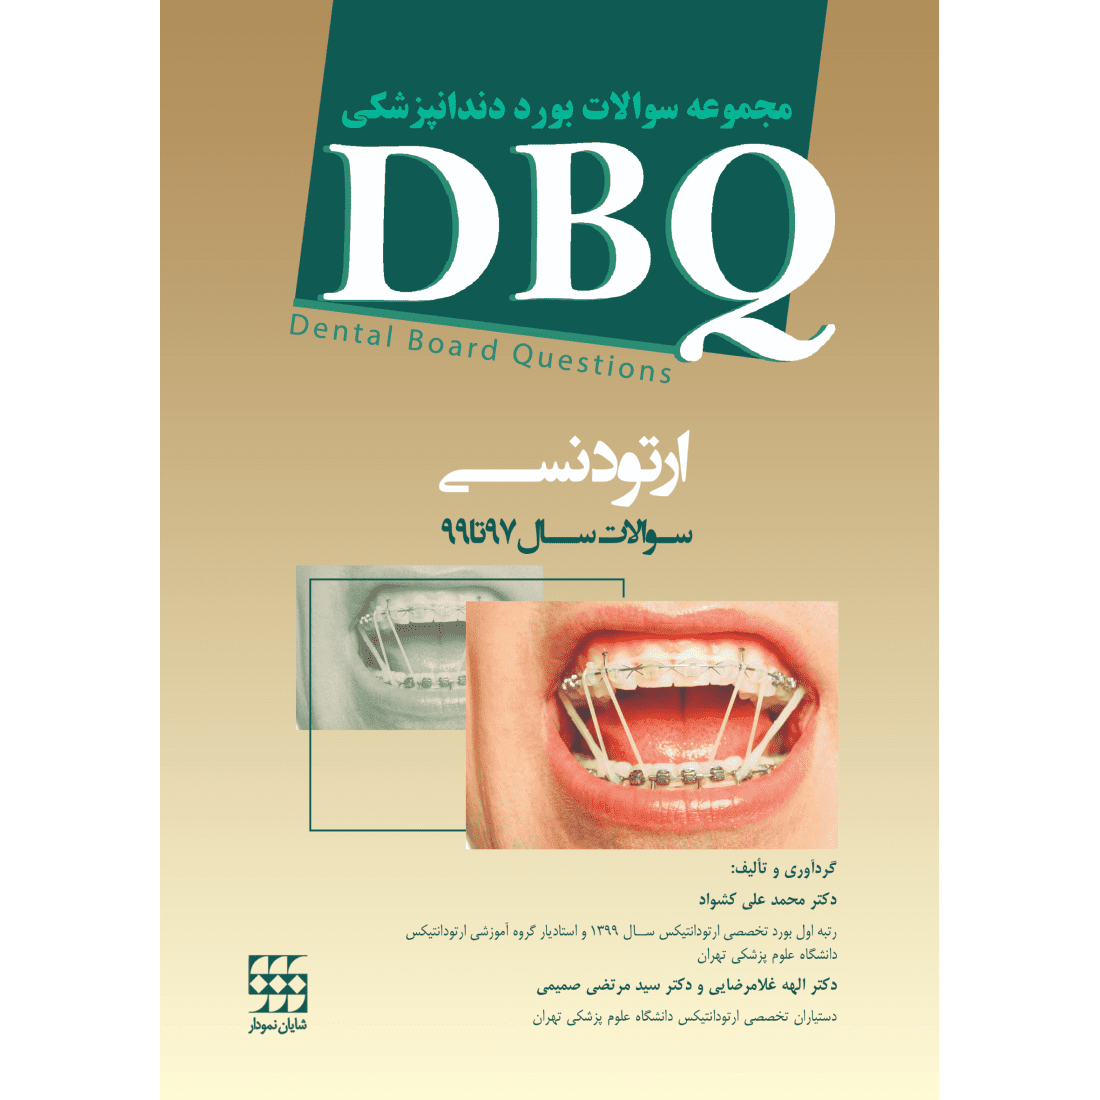 DBQ ارتودنسی (مجموعه سوالات بورد دندانپزشکی سوالات سال 97 تا 99)